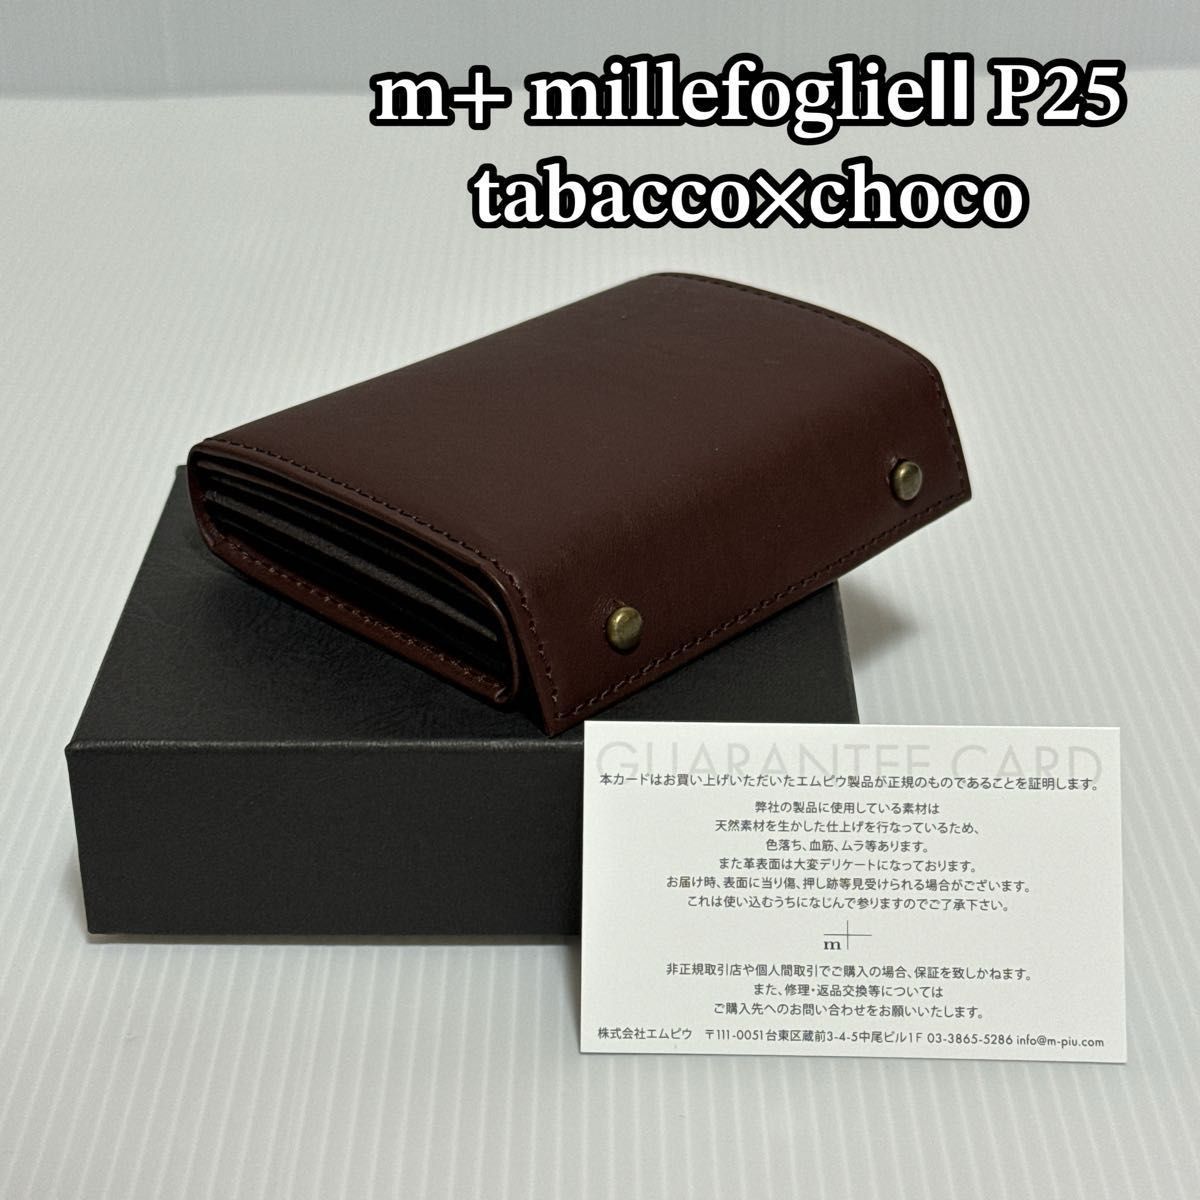 エムピウ millefoglieⅡ P25 tabacco×choco